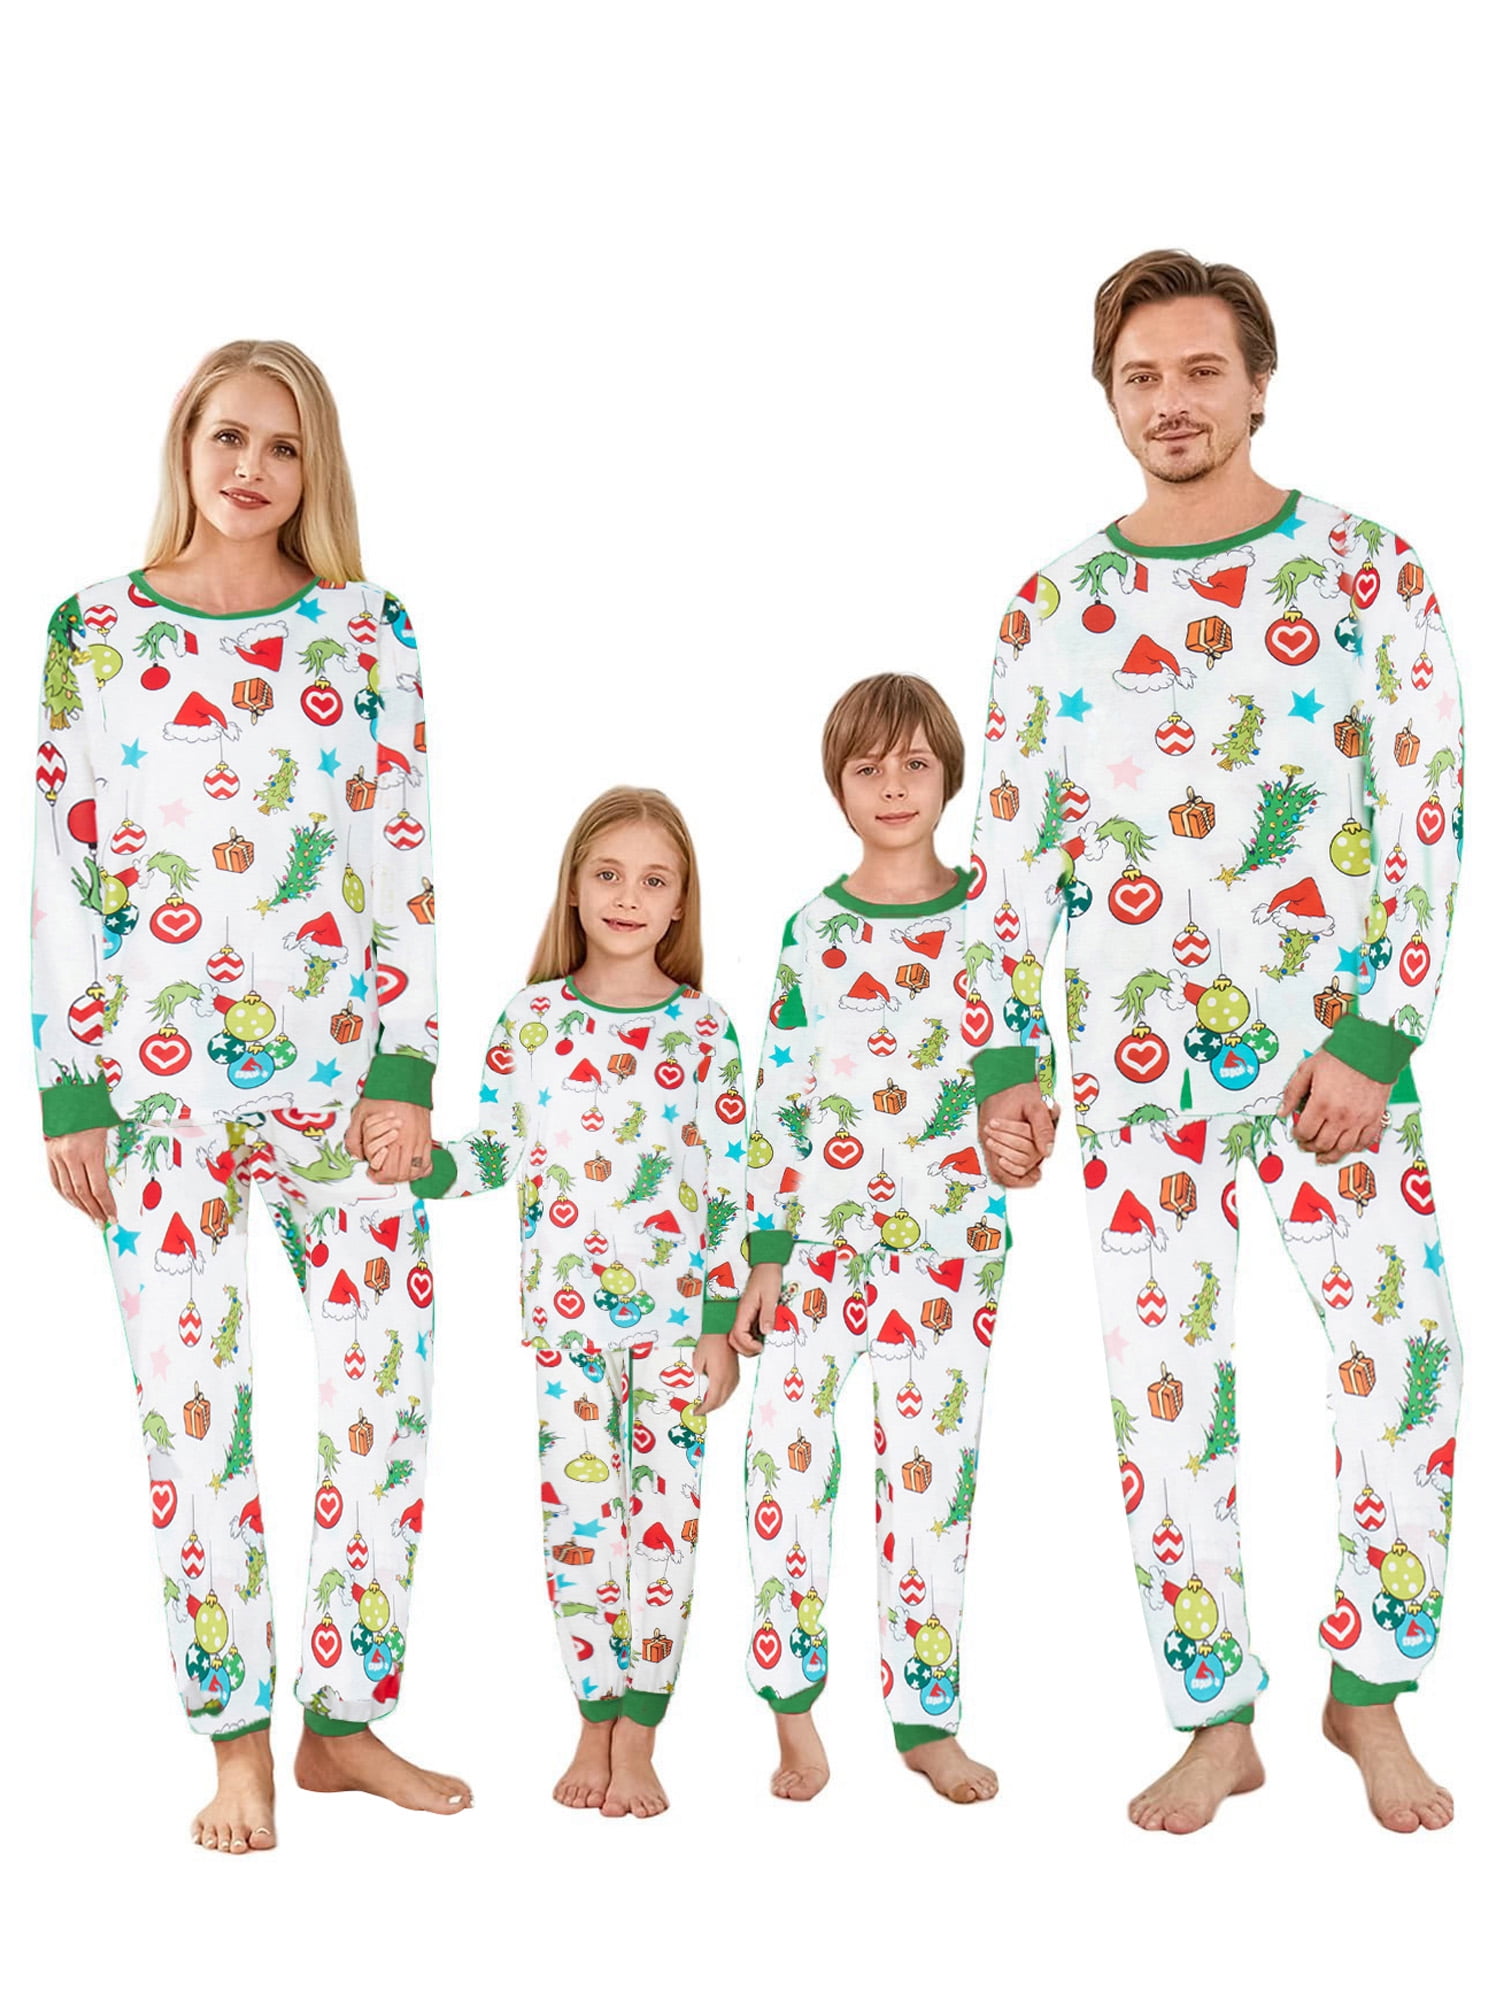 Thaisu Christmas Family Pajamas Set Matching Xmas Cartoon Pjs Nightwear ...